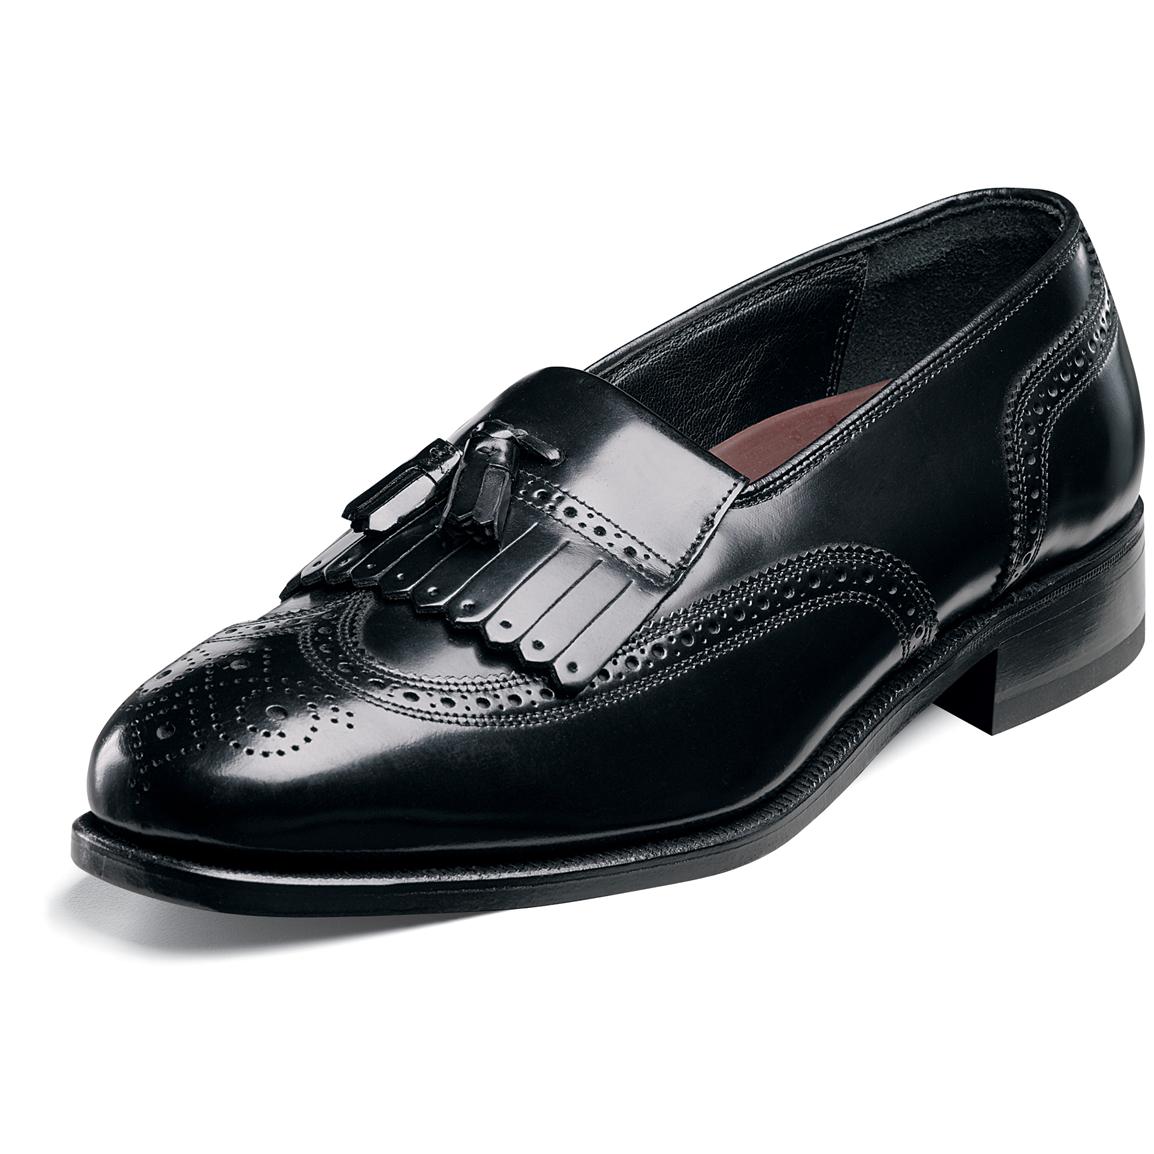 men-s-florsheim-kiltie-tasseled-wing-tip-lexington-shoes-black